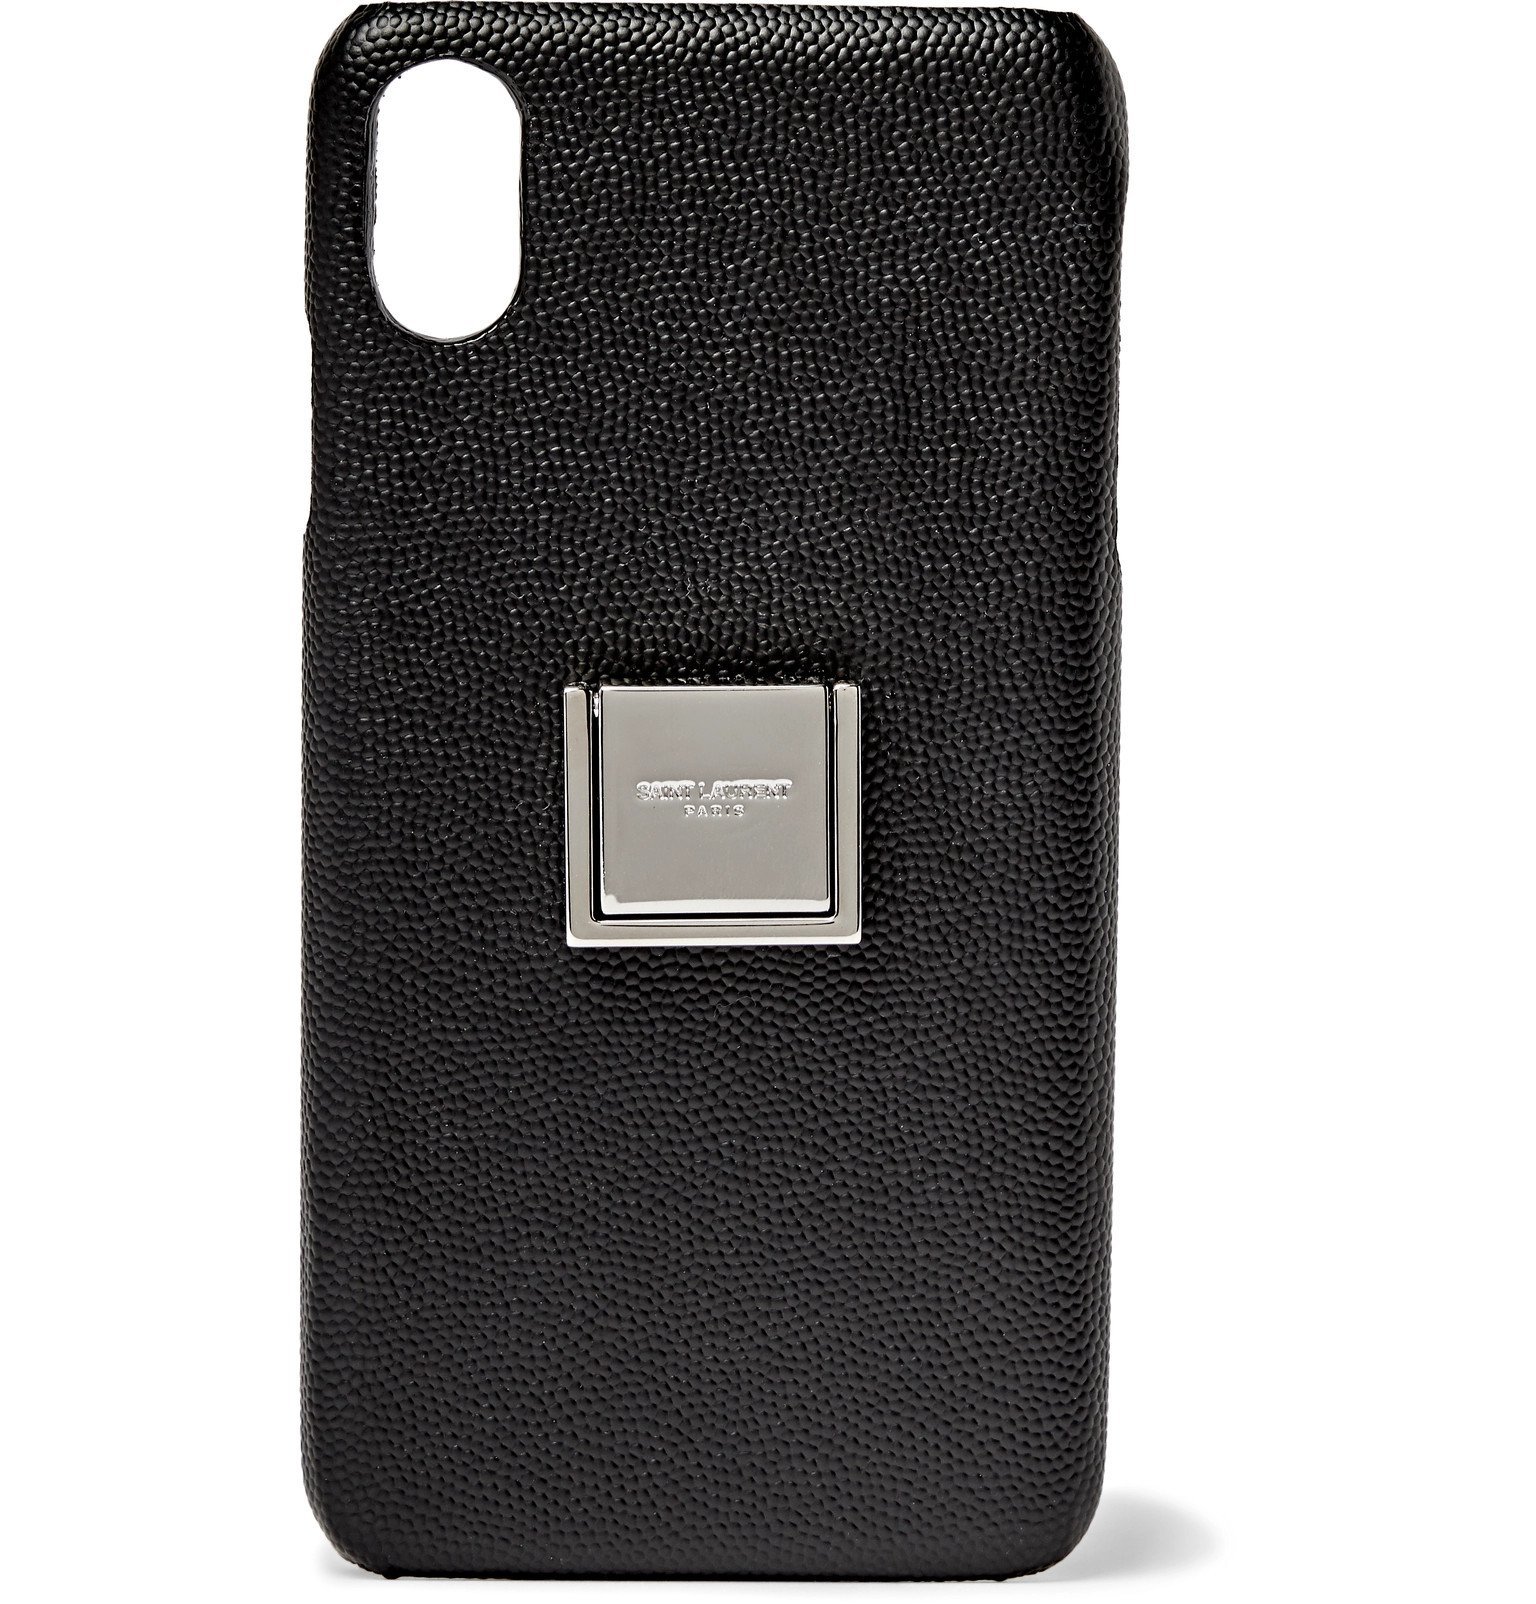 SAINT LAURENT - Pebble-Grain Leather iPhone XS Max Case - Black Saint